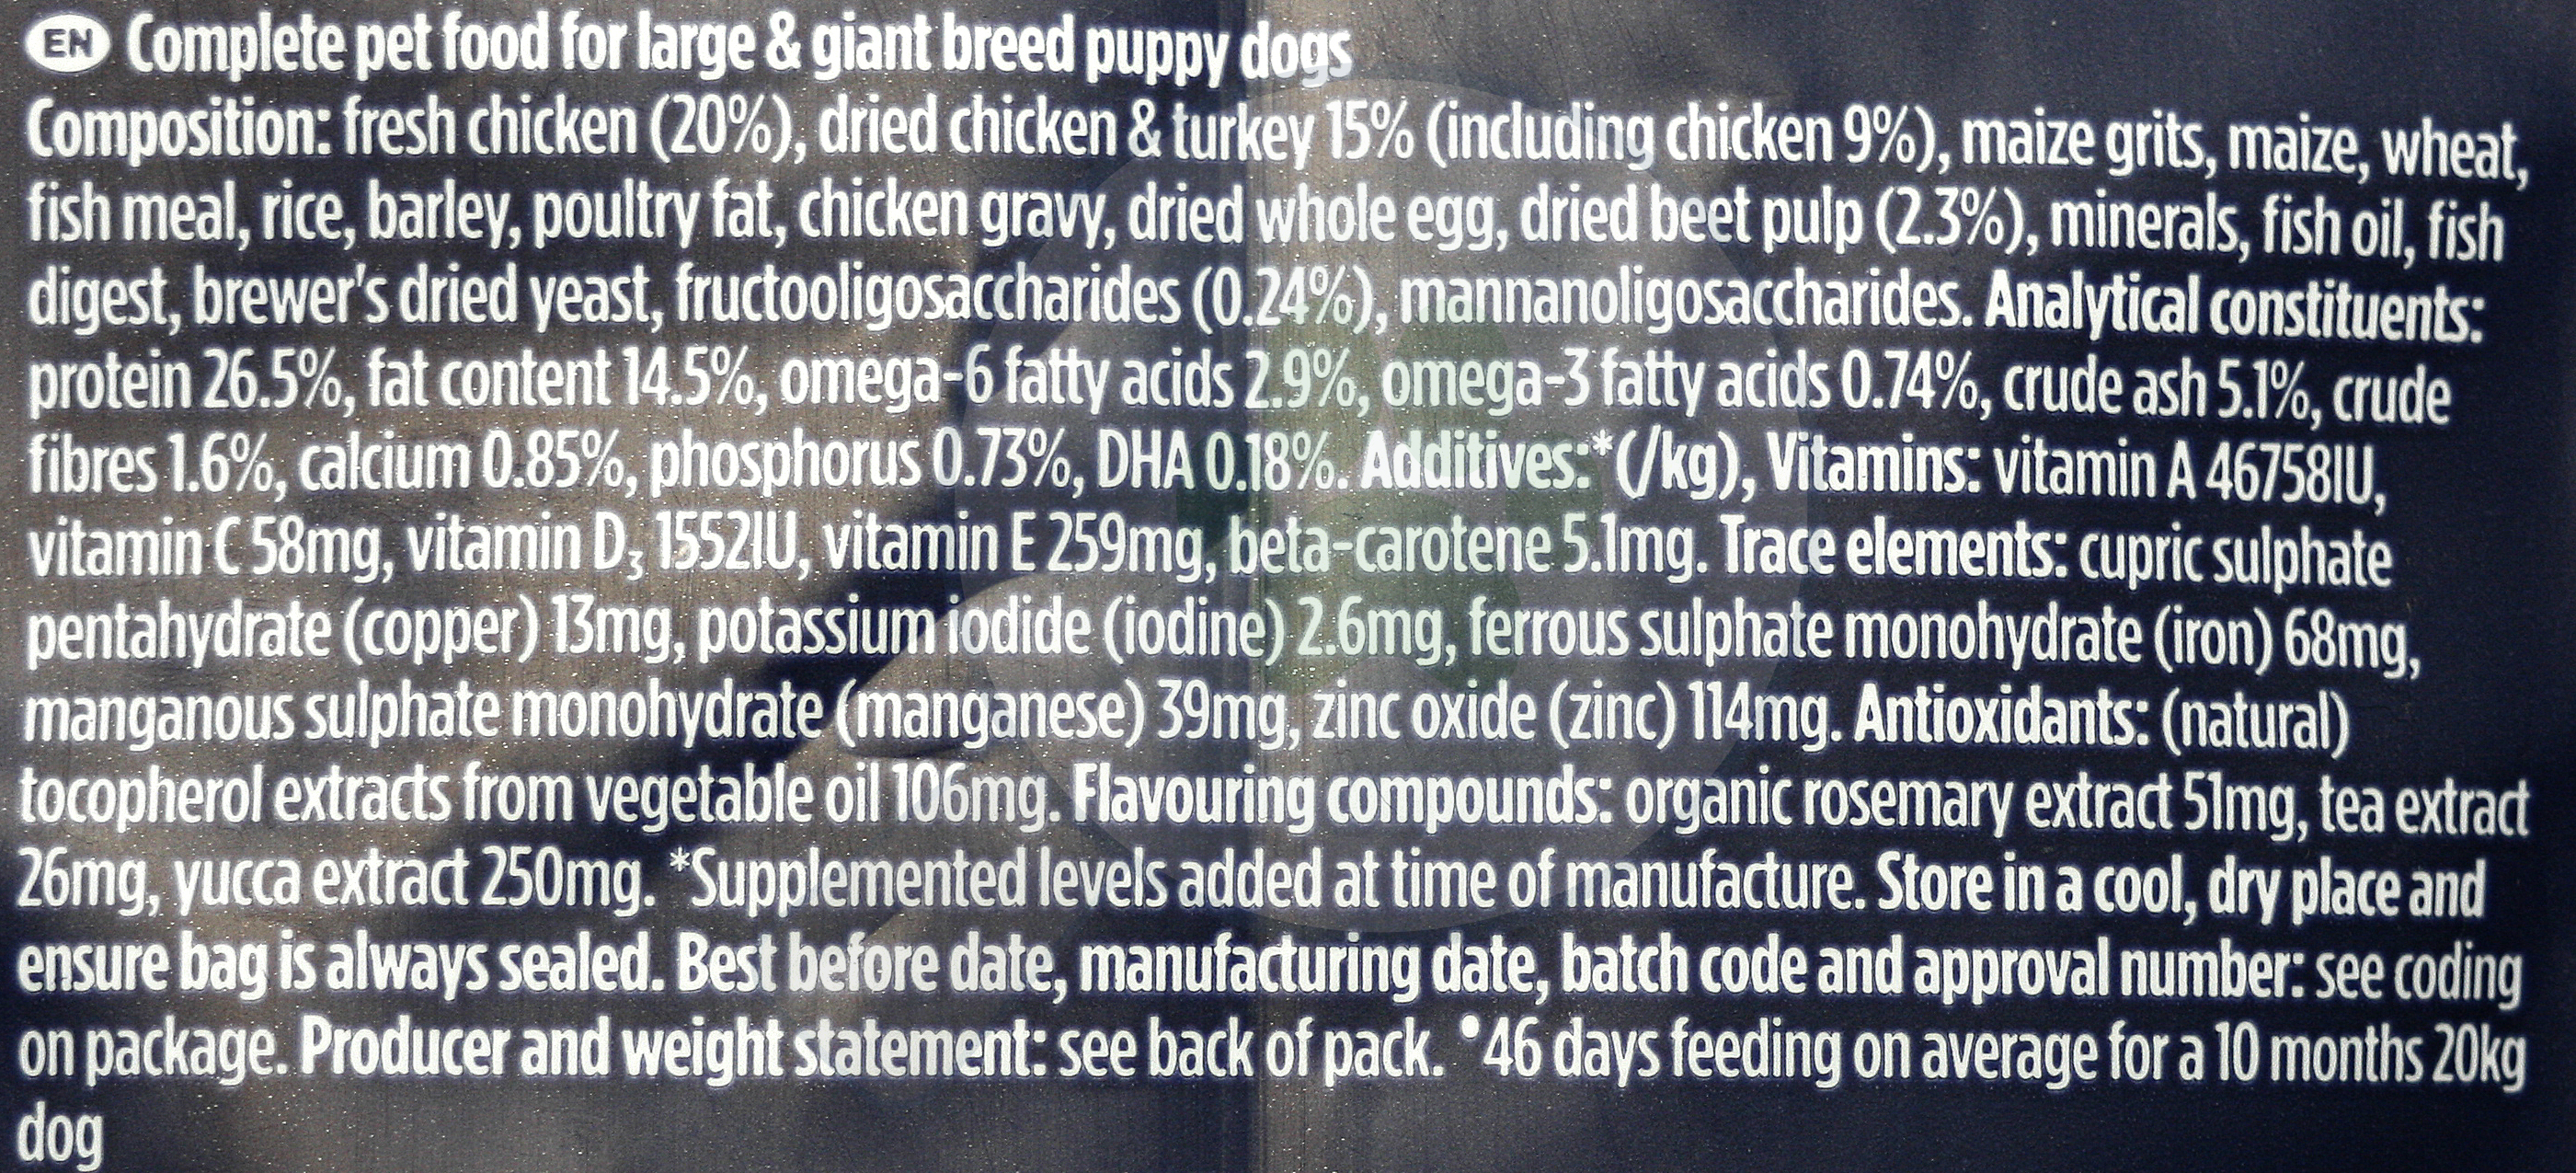 Eukanuba Puppy Large | Hrană pentru pui de câini de talie mare